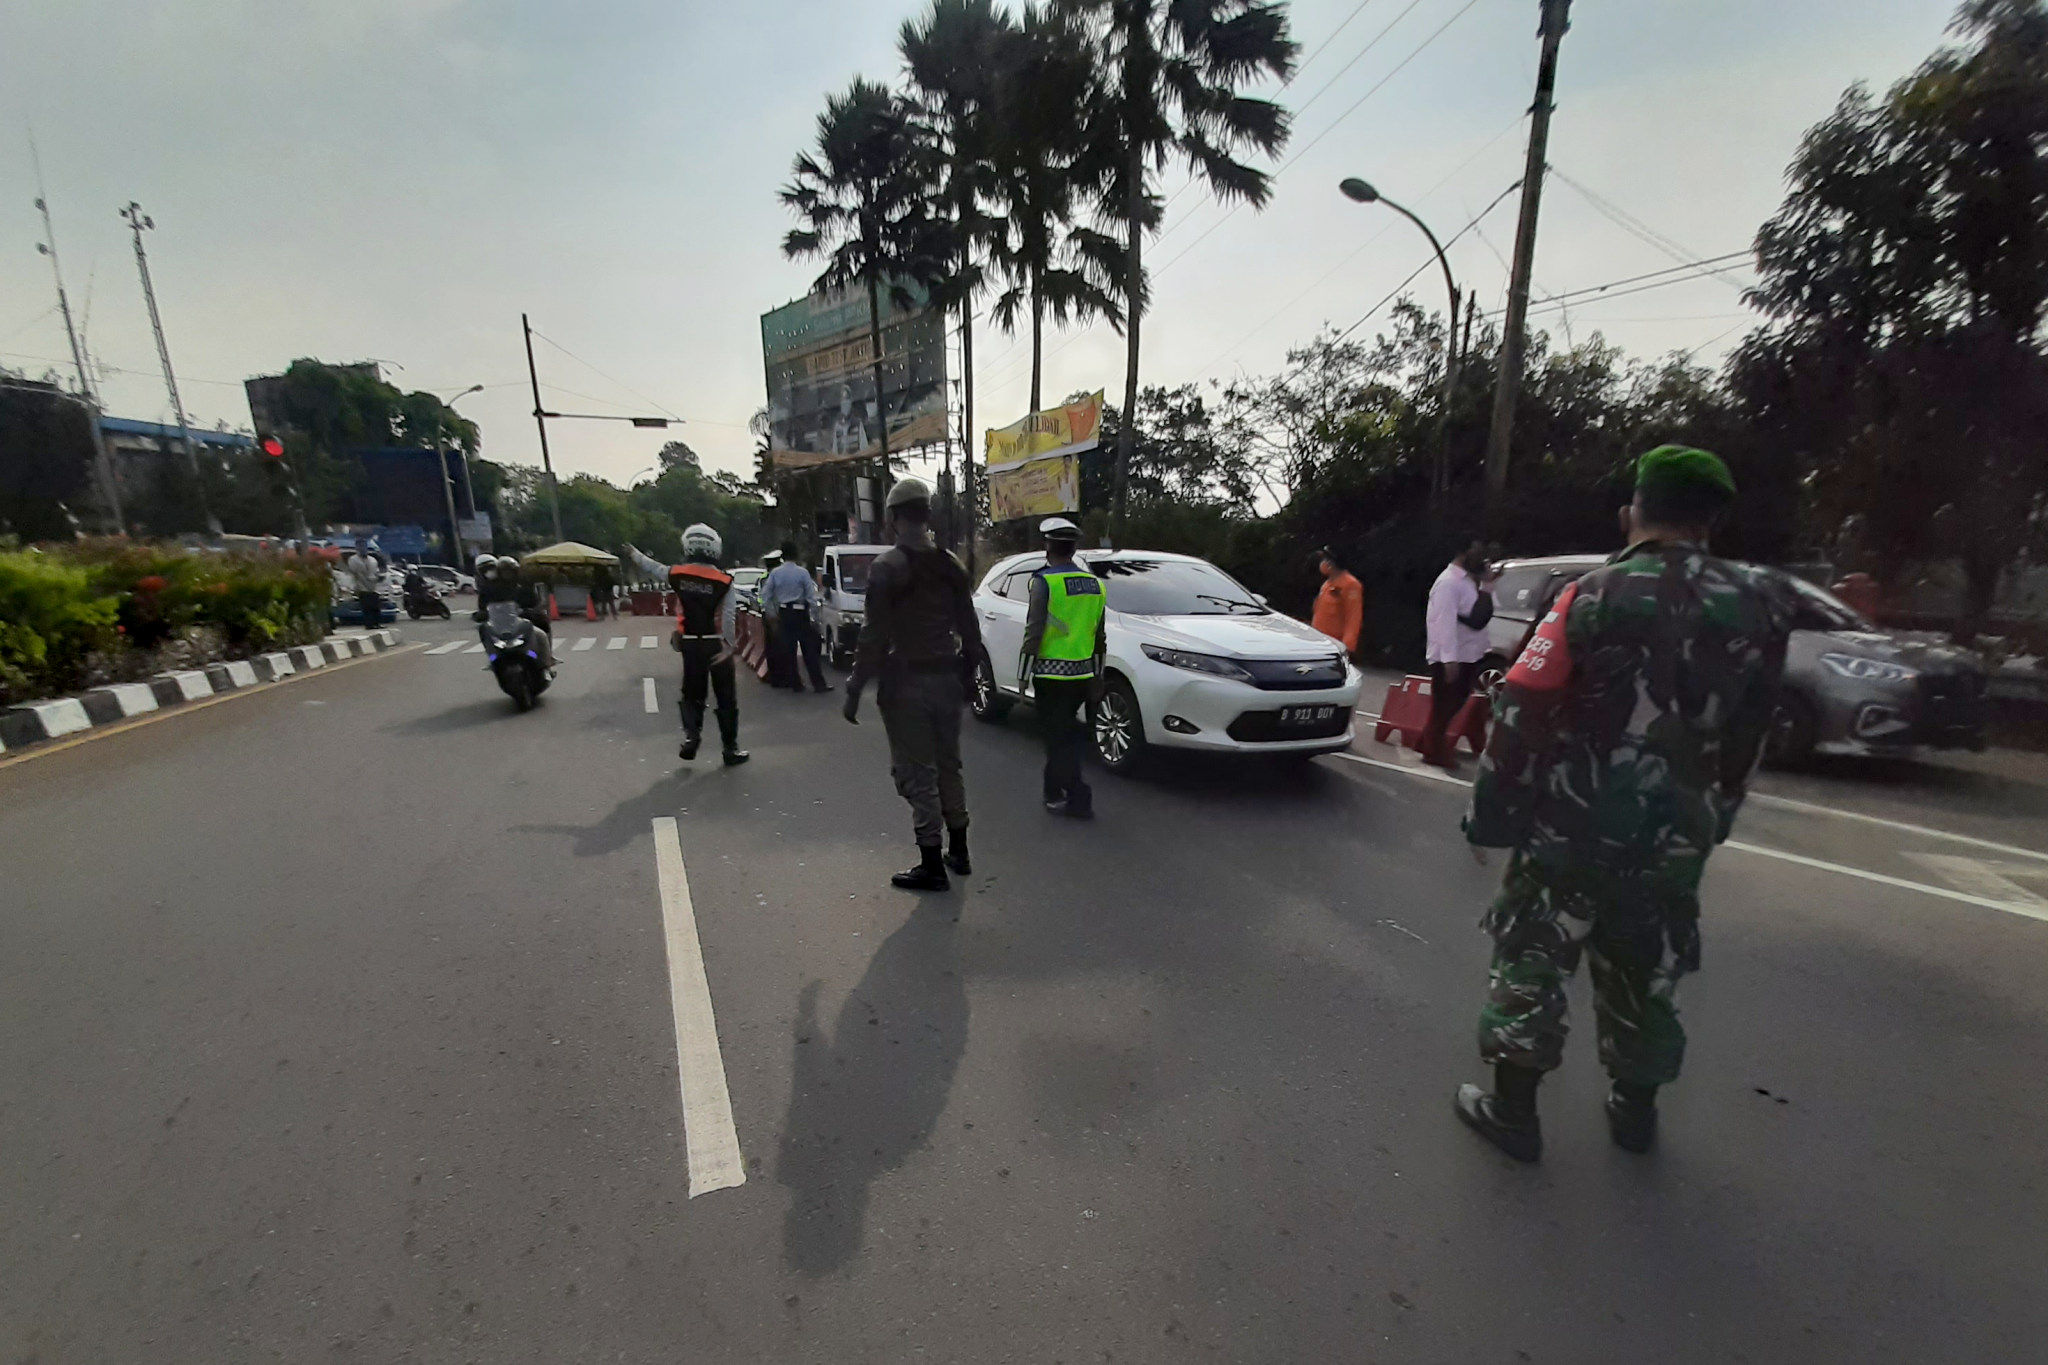 Petugas gabungan mengarahkan kendaraan saat uji coba penerapan sistem ganjil genap di Jalan Raya Puncak, Gadog, Ciawi, Kabupaten Bogor, Jawa Barat, Jumat, 3 September 2021. Foto: Ismail Pohan/TrenAsia